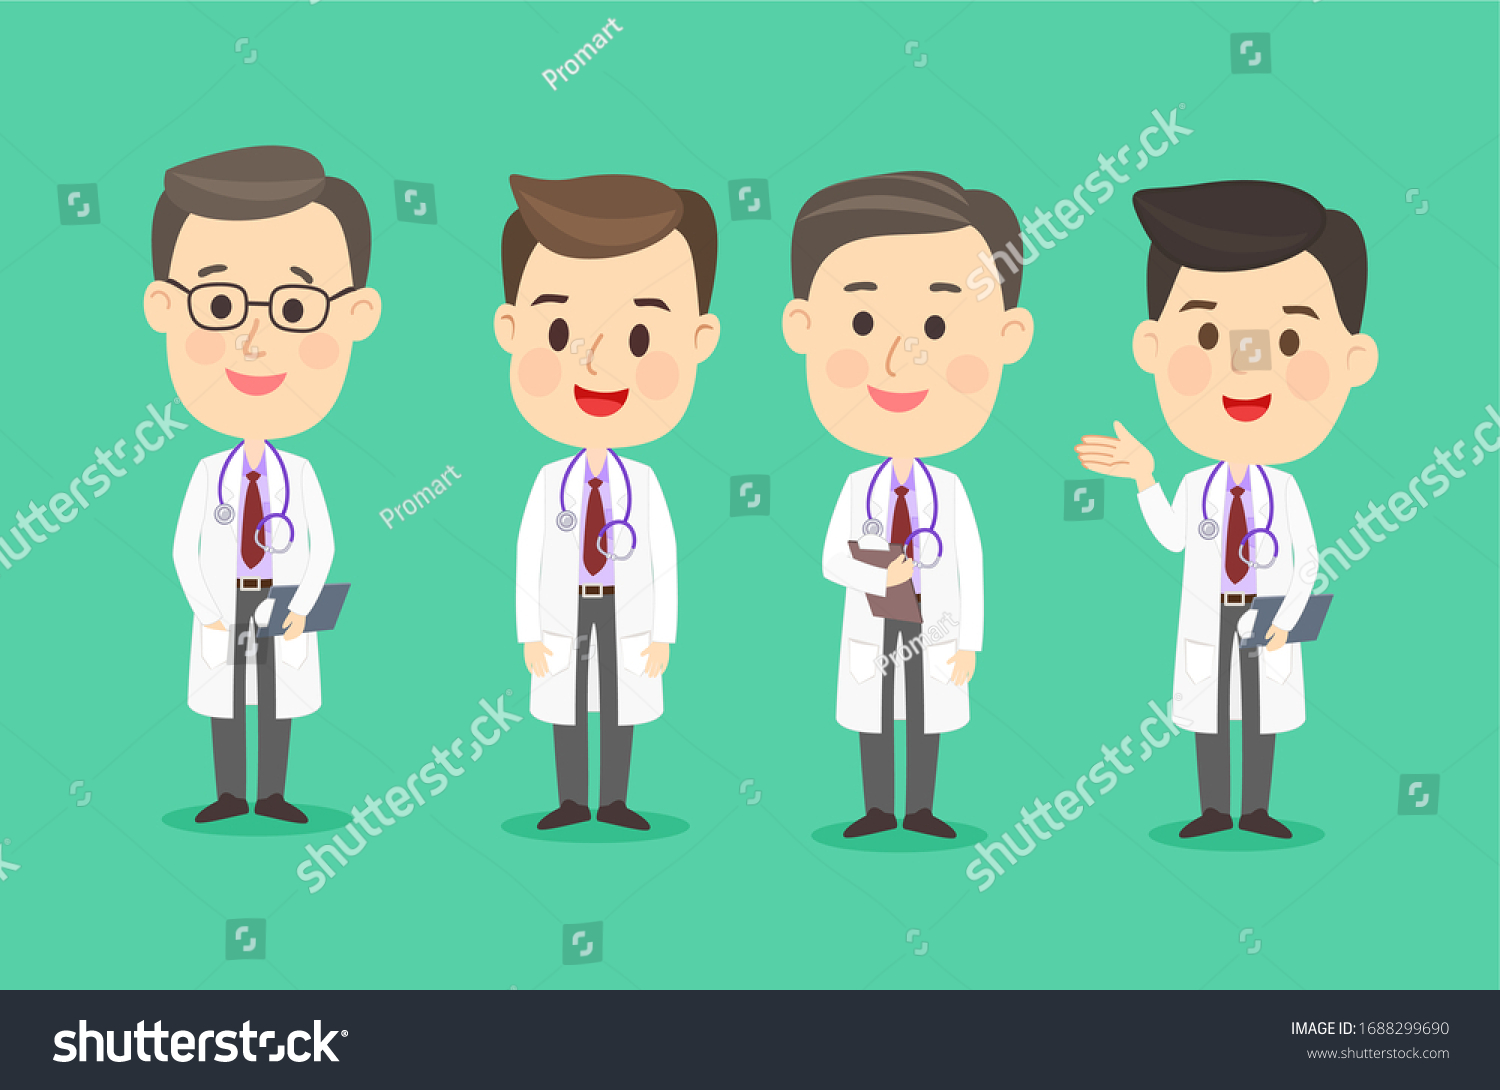 Set Cartoon Doctor Character Vector Stock Vector Royalty Free 1688299690 Shutterstock